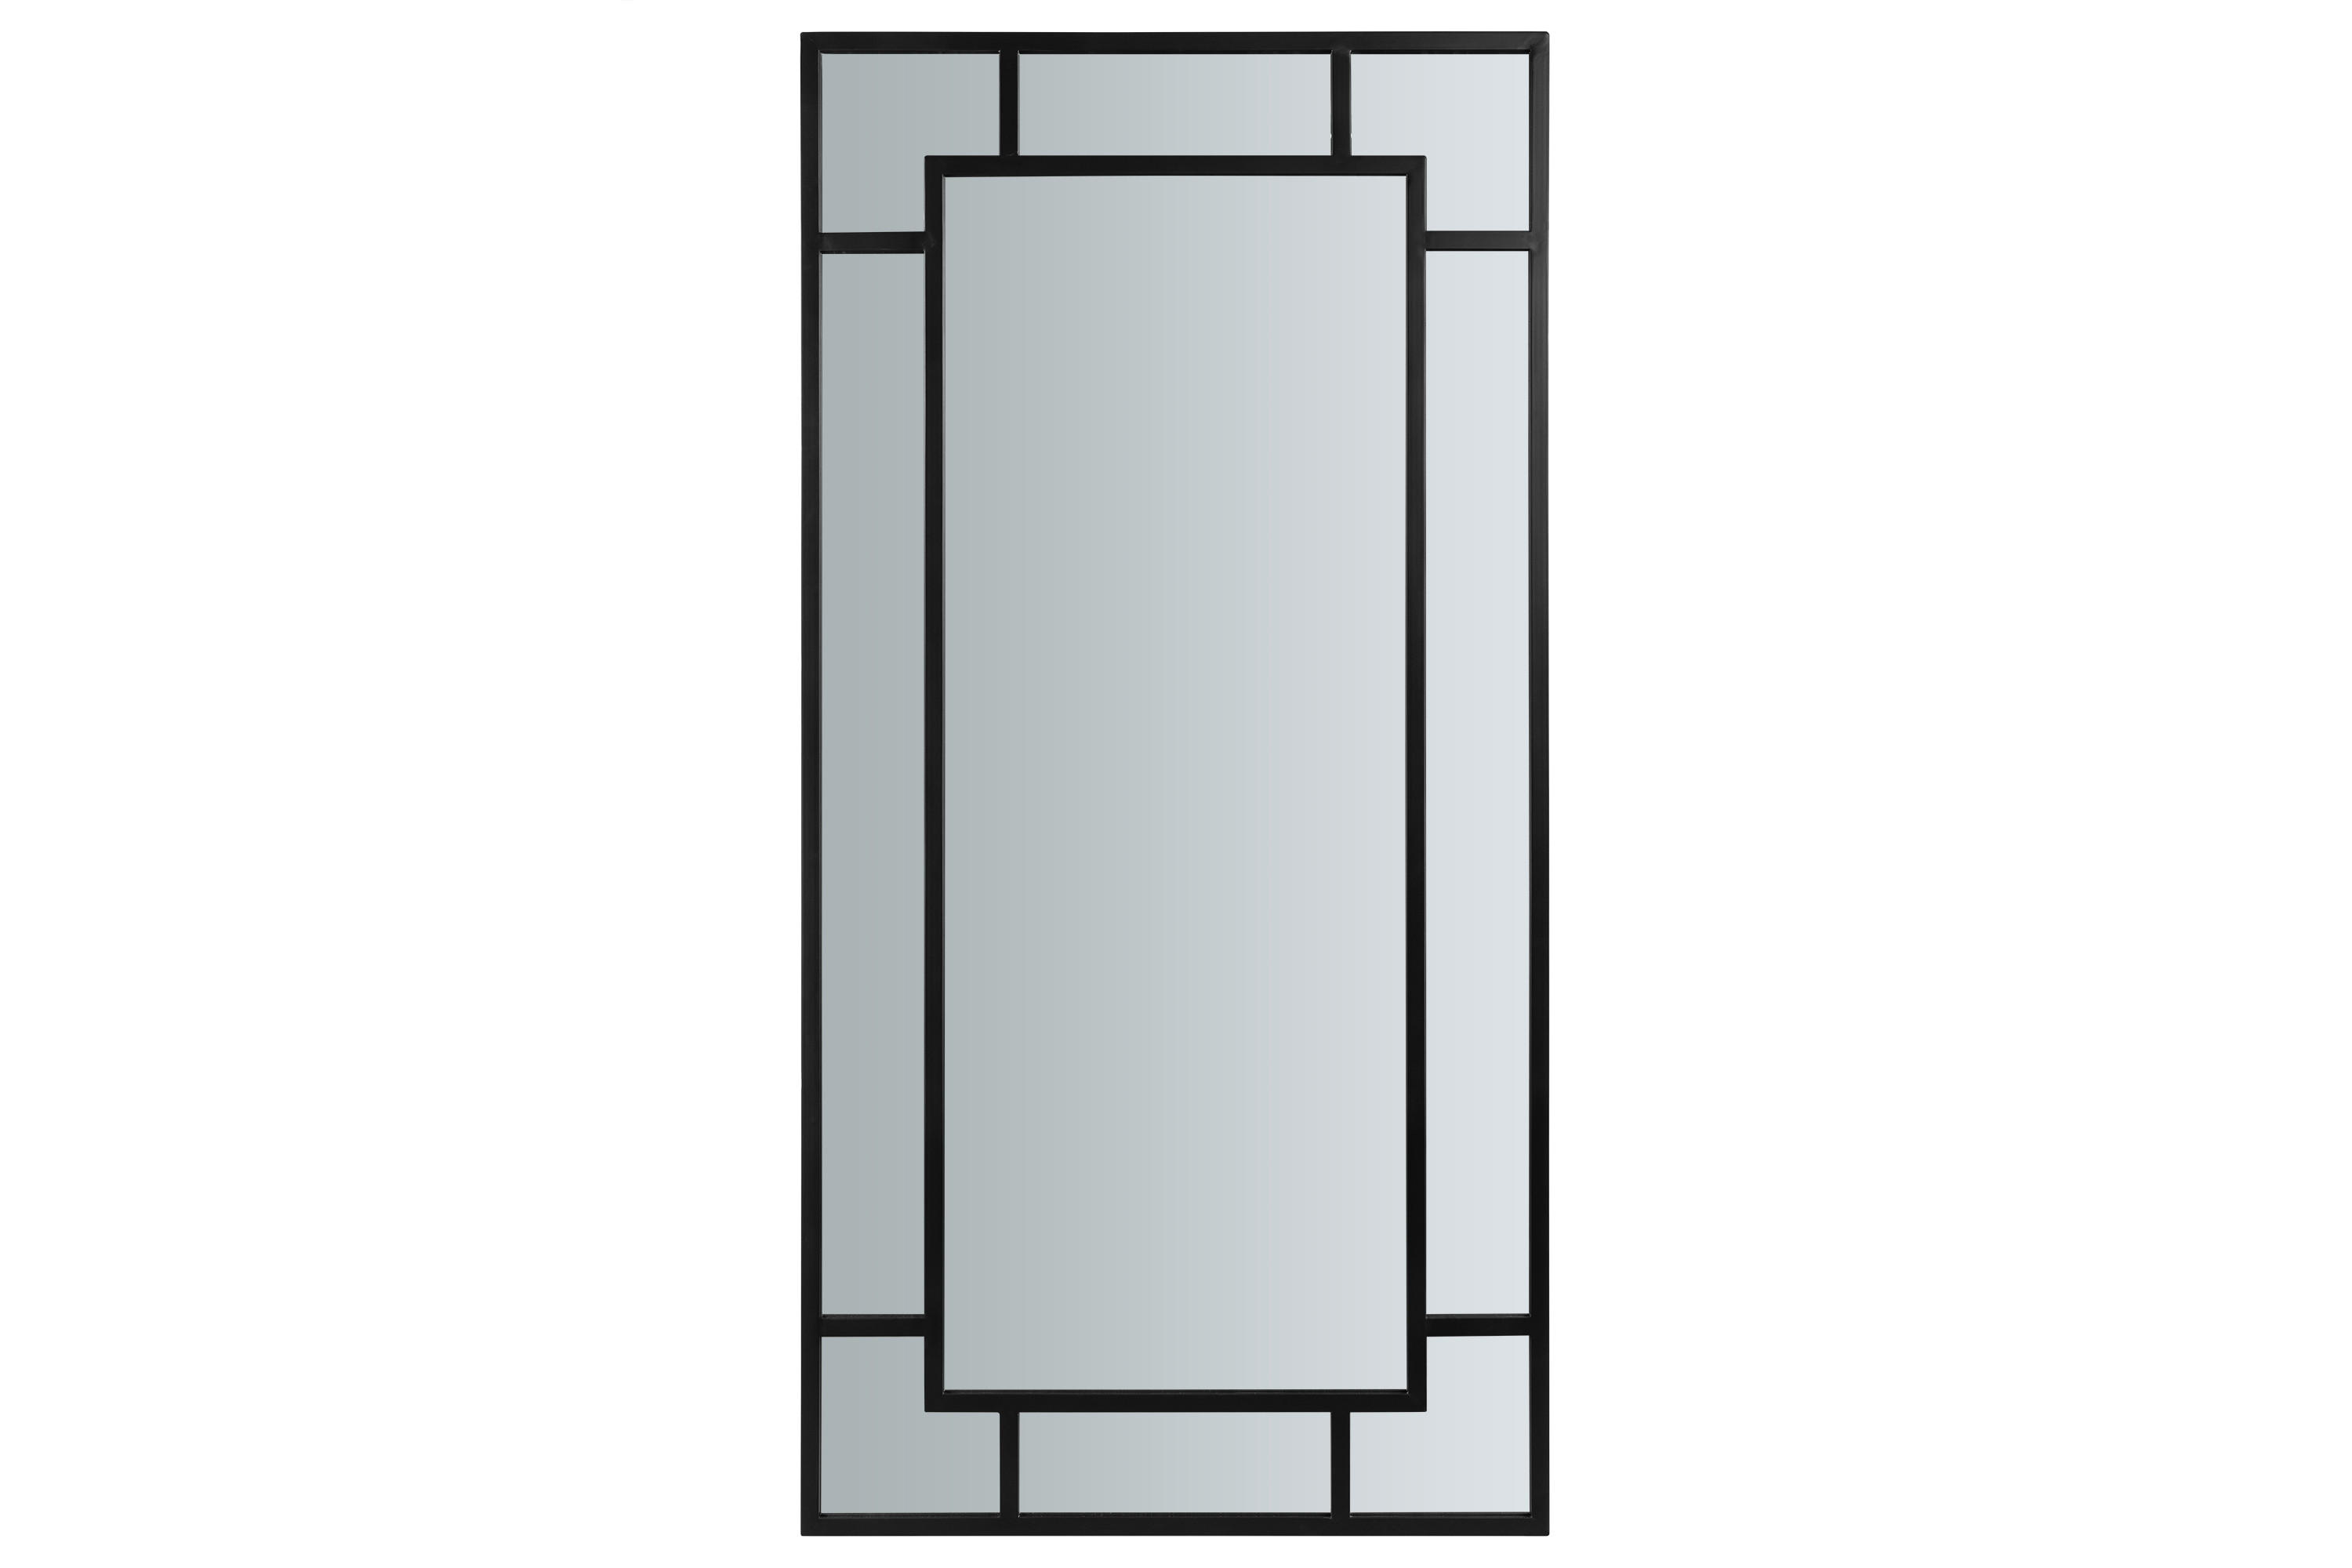 VÄGGSPEGEL 100/200/3 cm    - svart, Design, metall/glas (100/200/3cm) - Lomoco